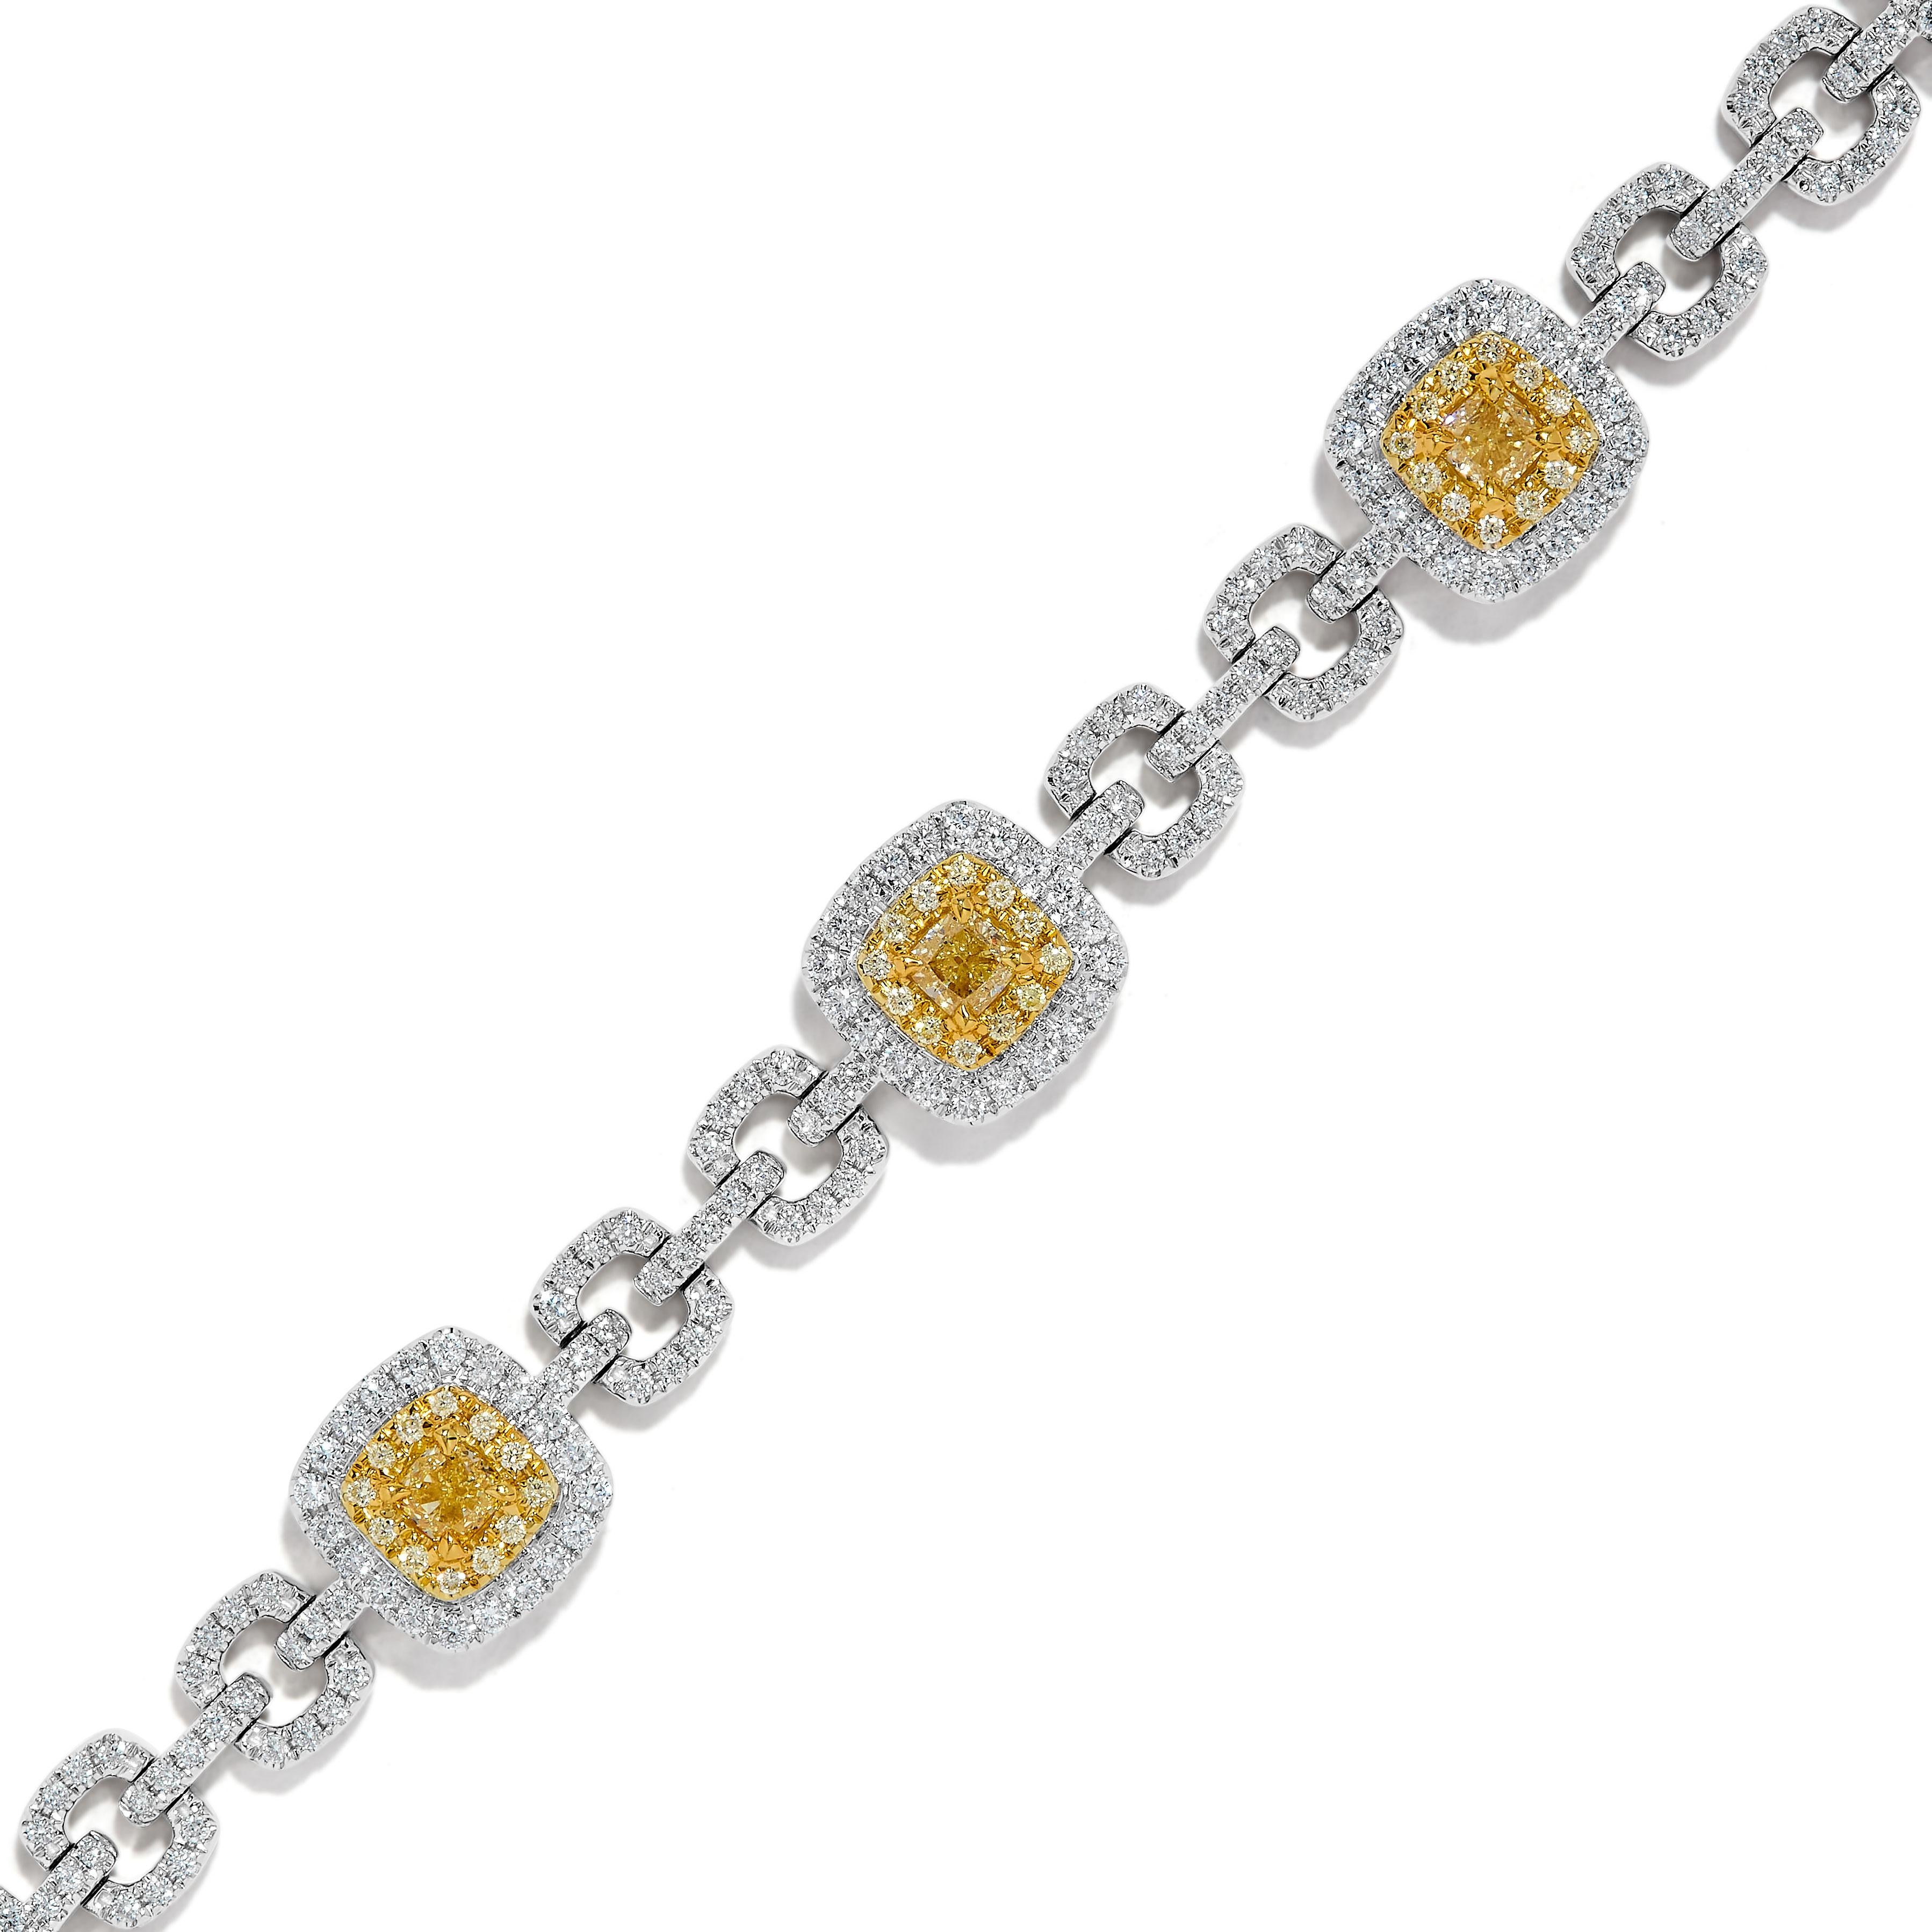 Das klassische Diamantarmband von RareGemWorld. Eingefasst in eine wunderschöne Fassung aus 18 Karat Gelb- und Weißgold mit 7 gelben Diamanten im Kissenschliff. Die gelben Diamanten sind umgeben von runden natürlichen gelben Diamanten und runden